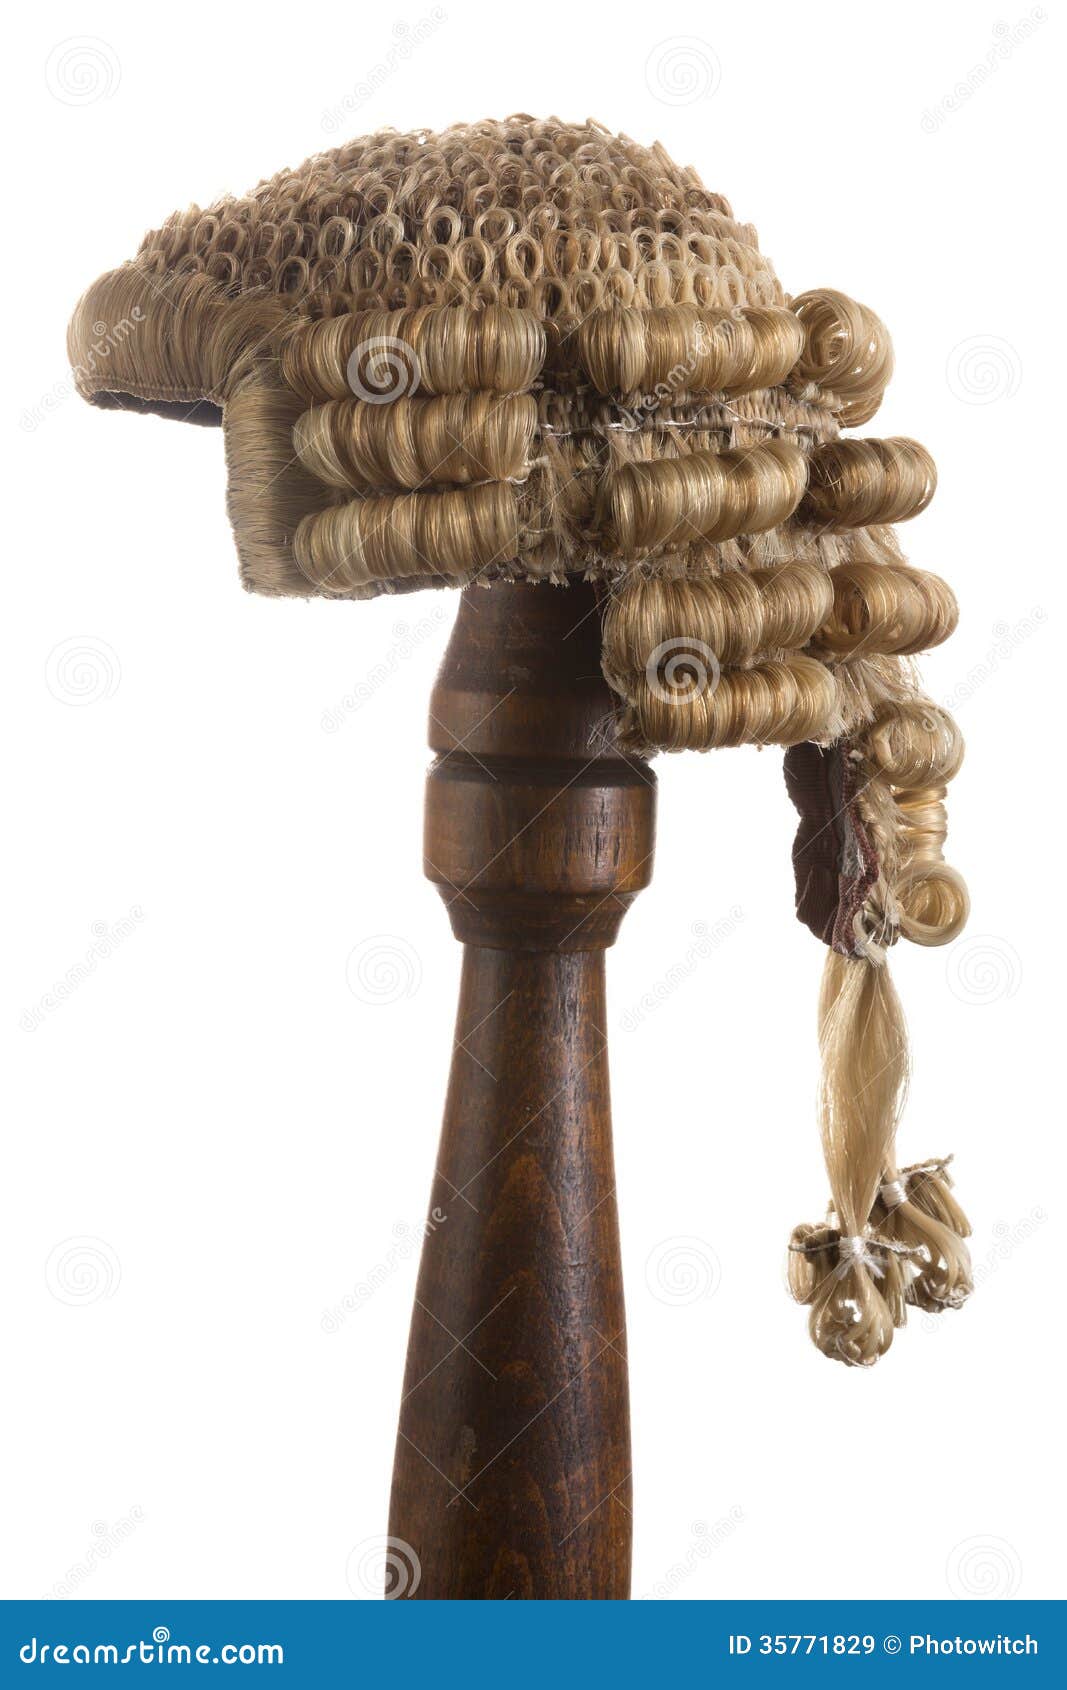  judge's wig